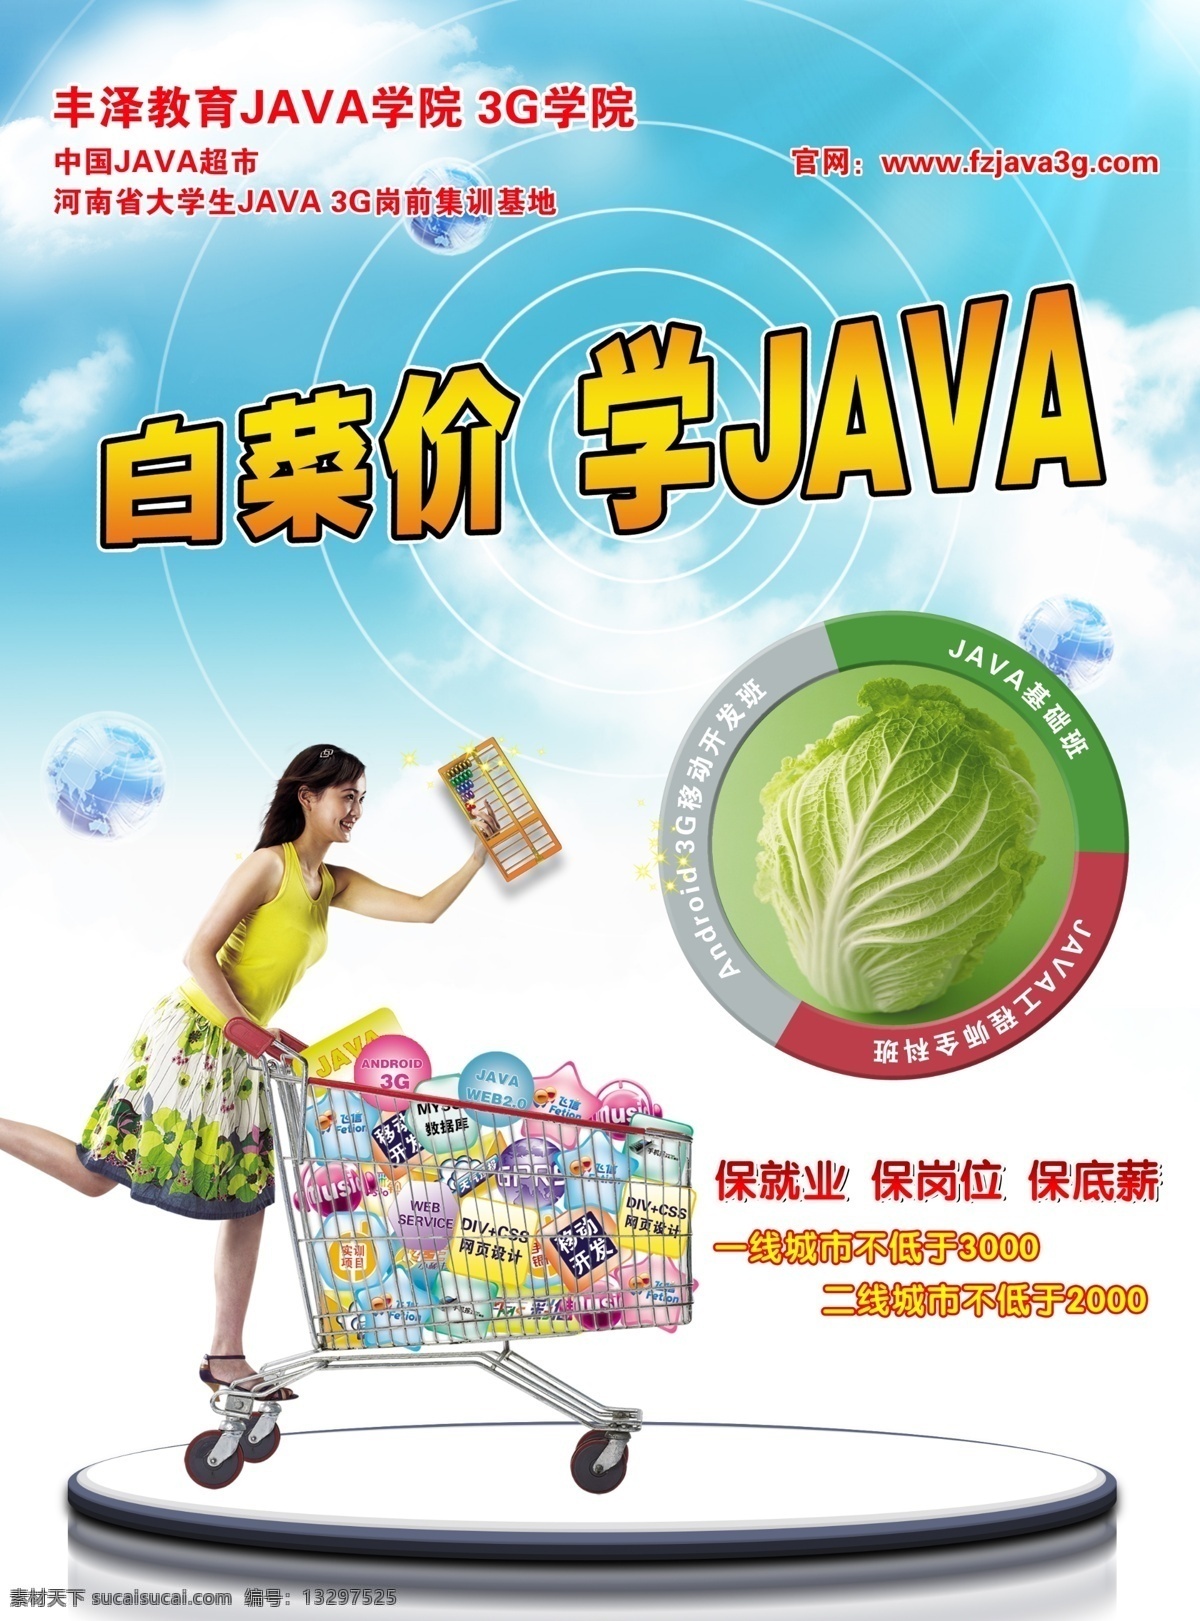 丰泽宣传 丰泽教育 超市海报 java超市 白菜价 购物 购物车 算盘 广告设计模板 源文件